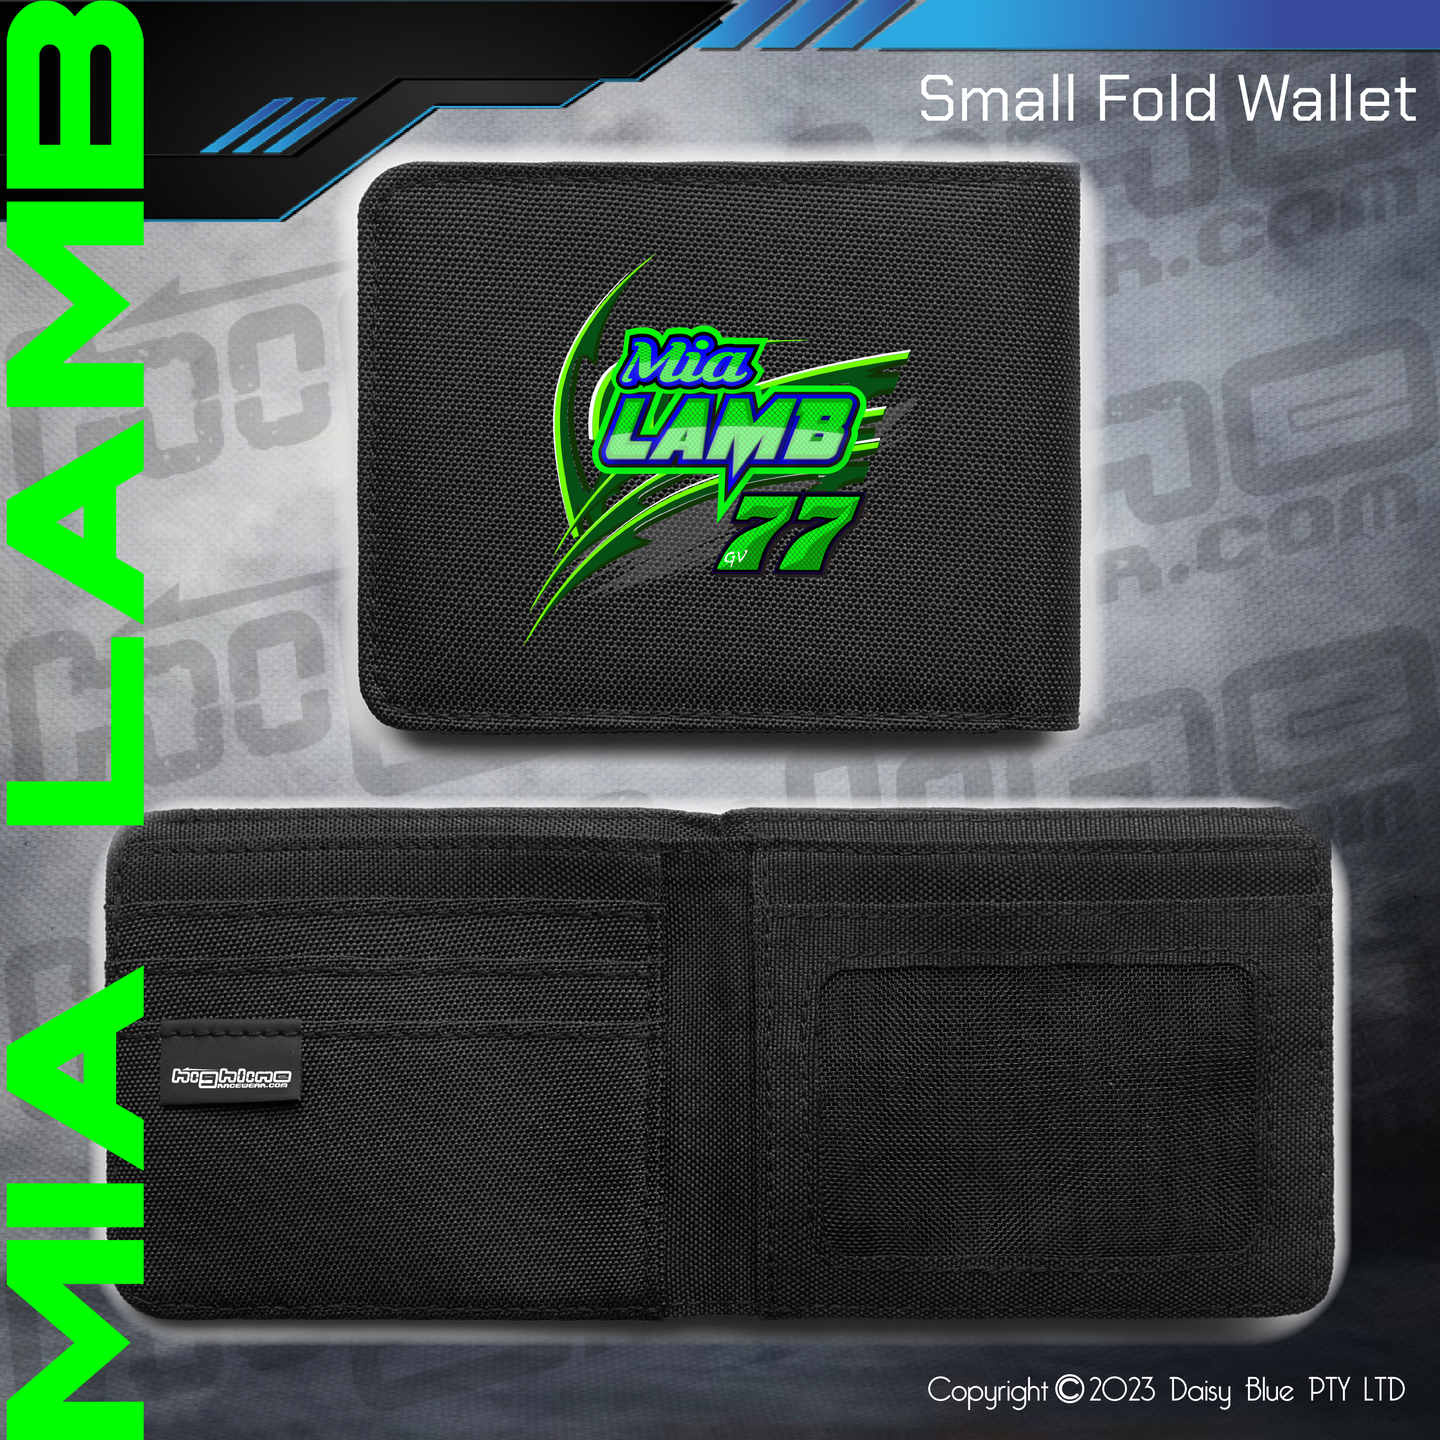 Compact Wallet - Mia Lamb